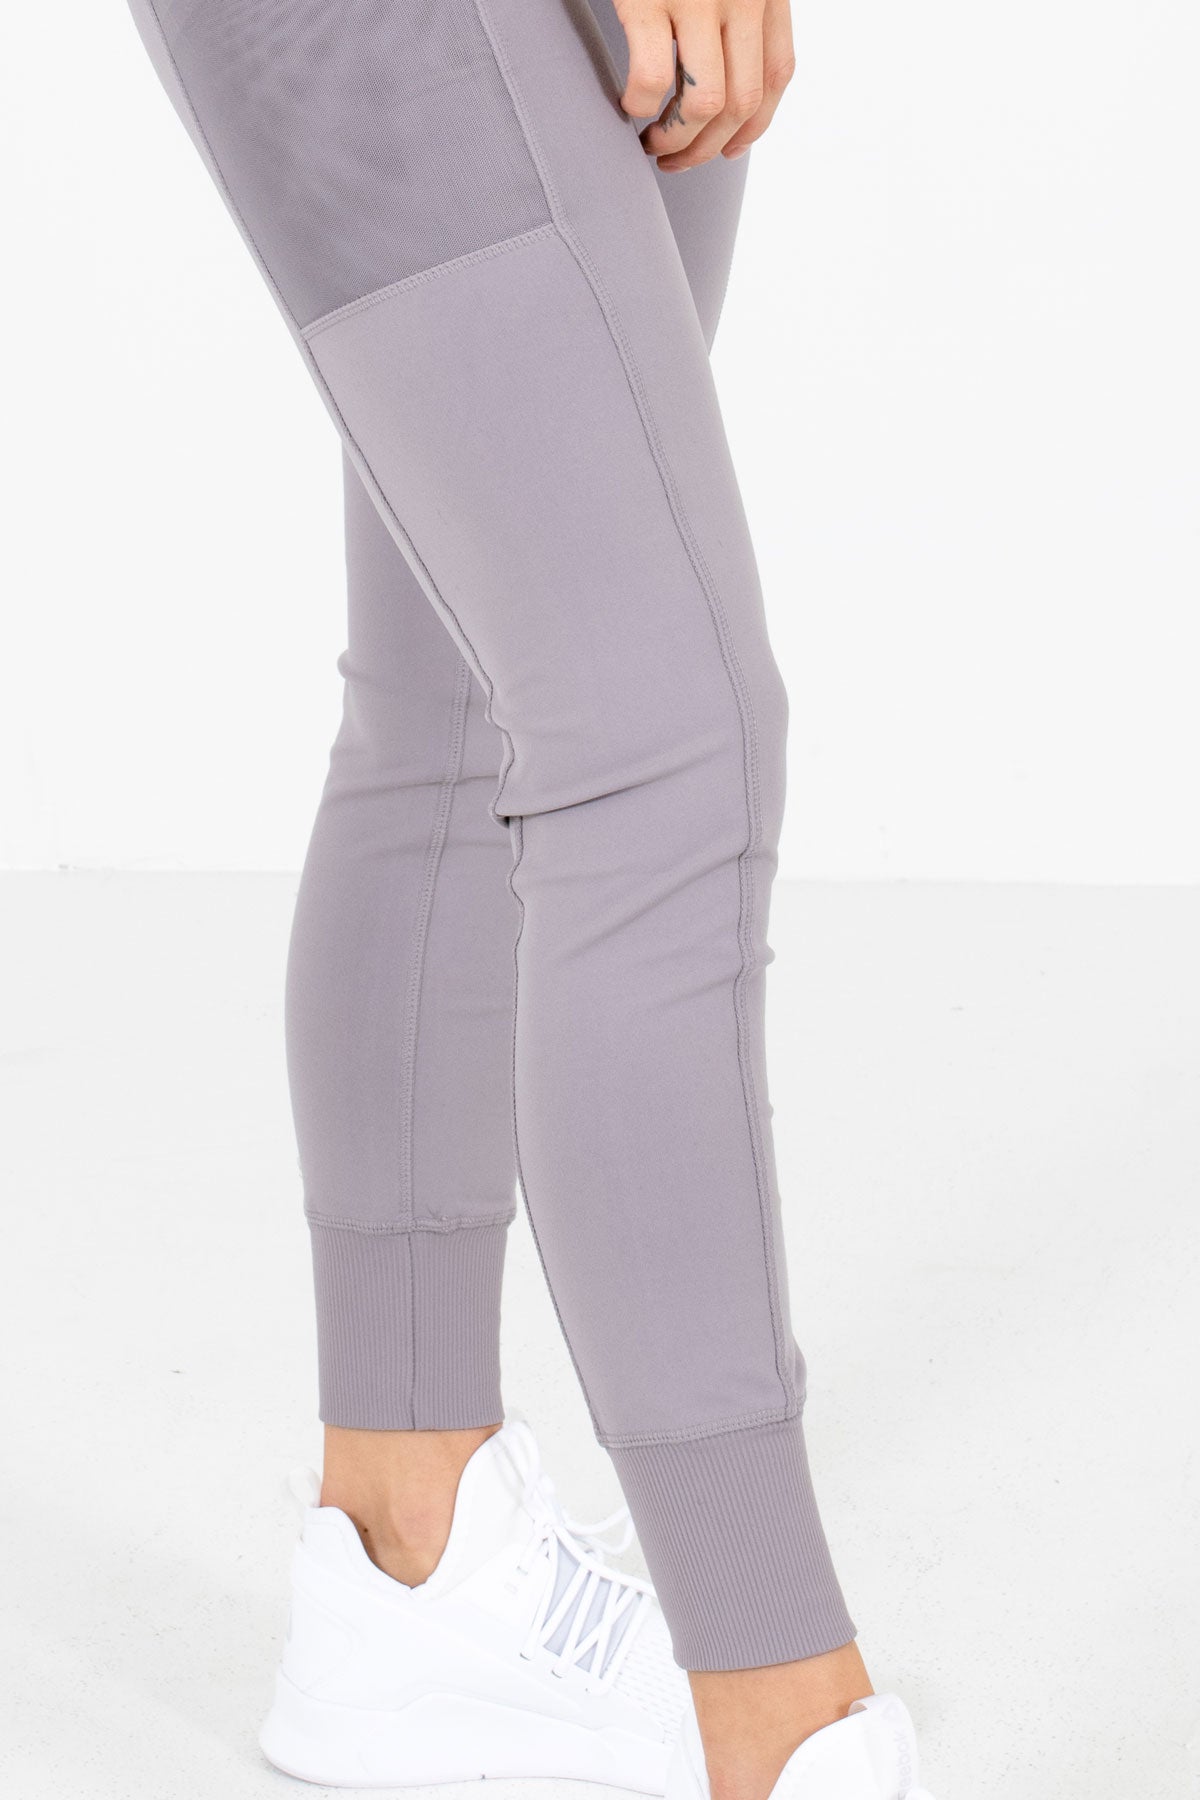 Women’s Dusty Purple Stretchy Boutique Active Jogger Leggings